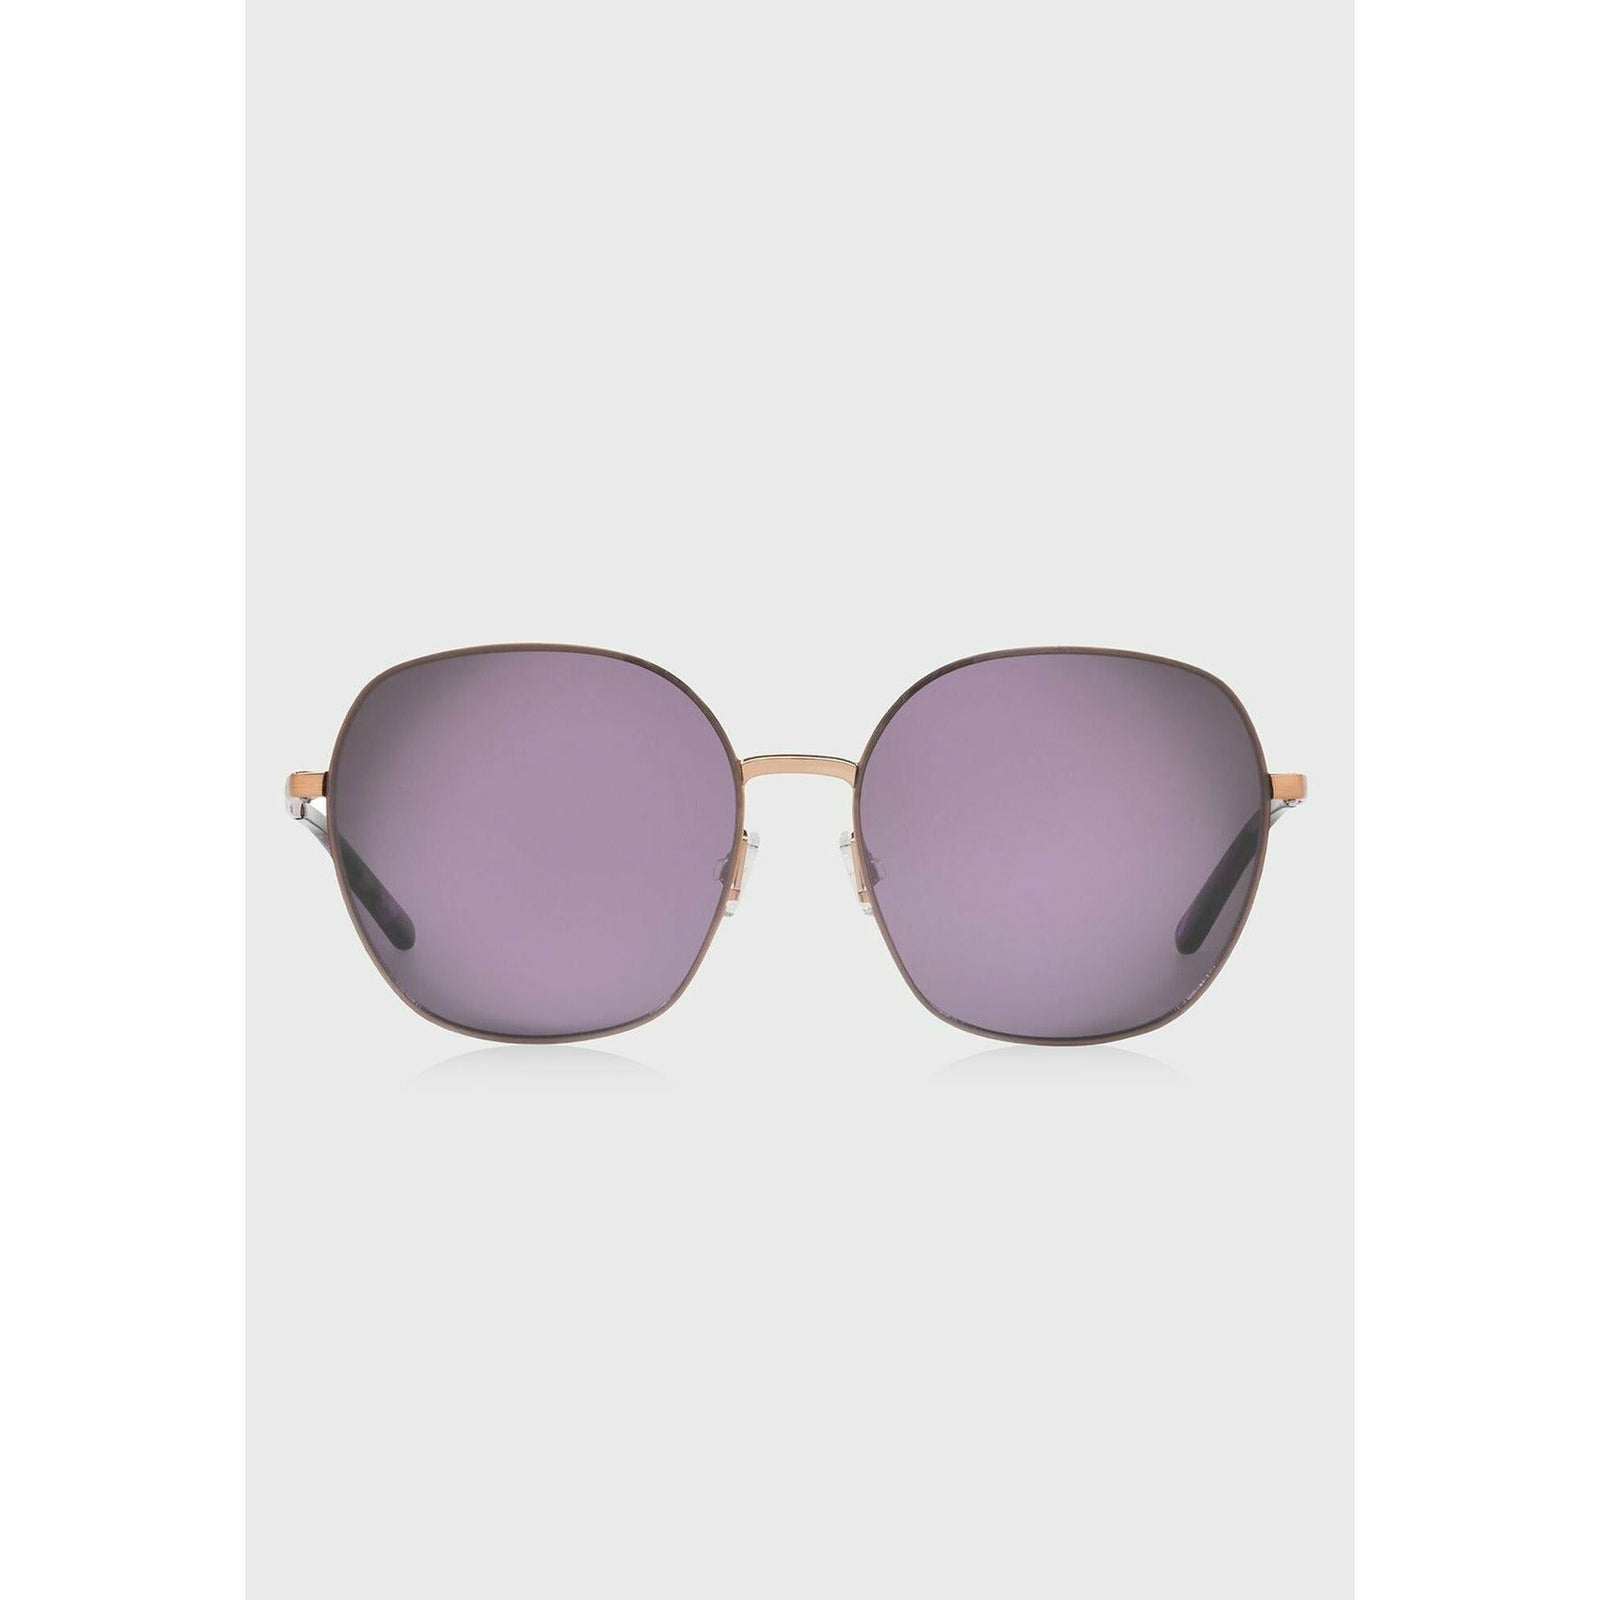 Polo Ralph Lauren Men's Ph3110 60mm Pilot Sunglasses | Dillard's